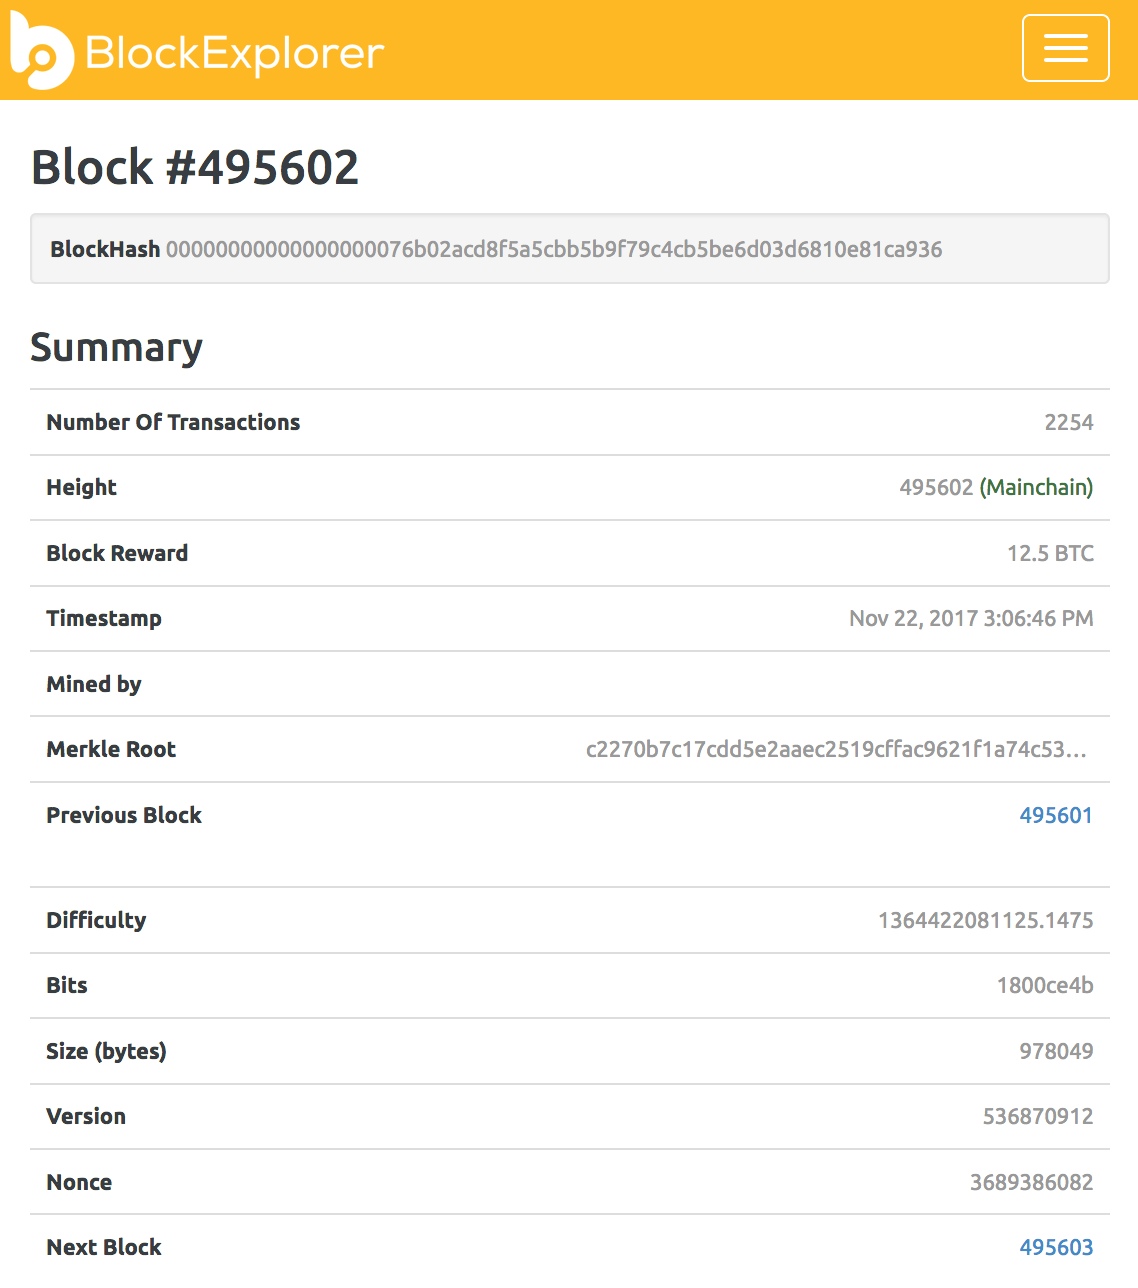 Bitcoin block number 495603